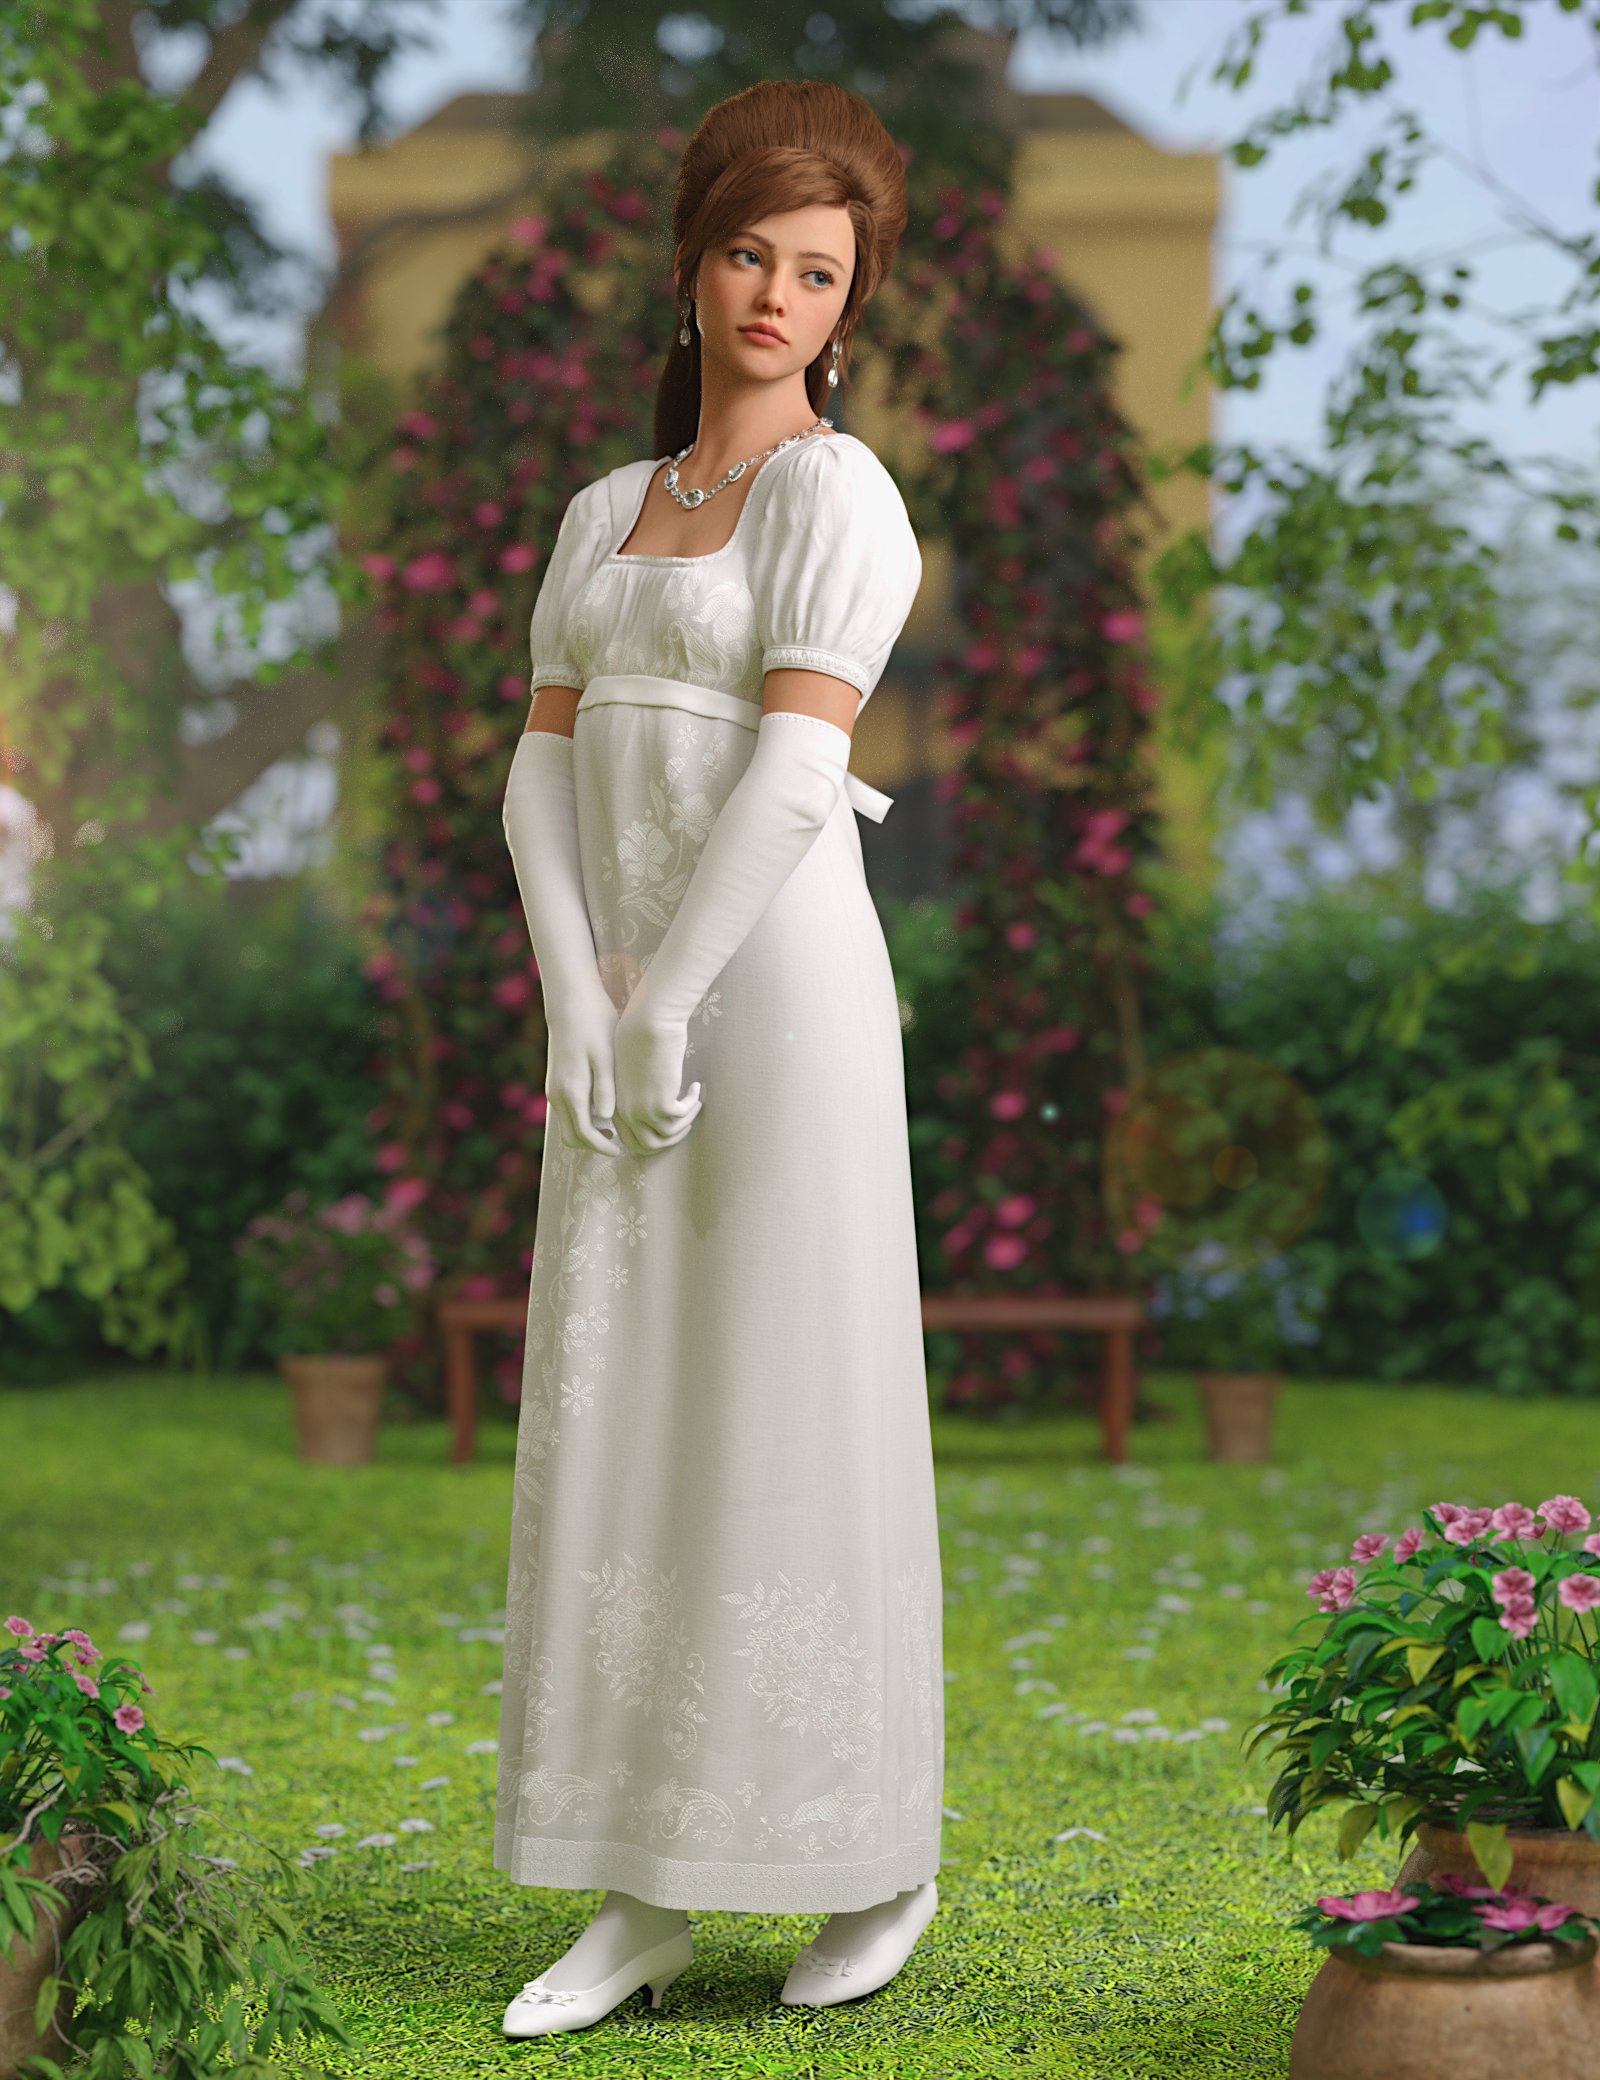 dForce Regency Outfit for Genesis 9 by: Toyen, 3D Models by Daz 3D